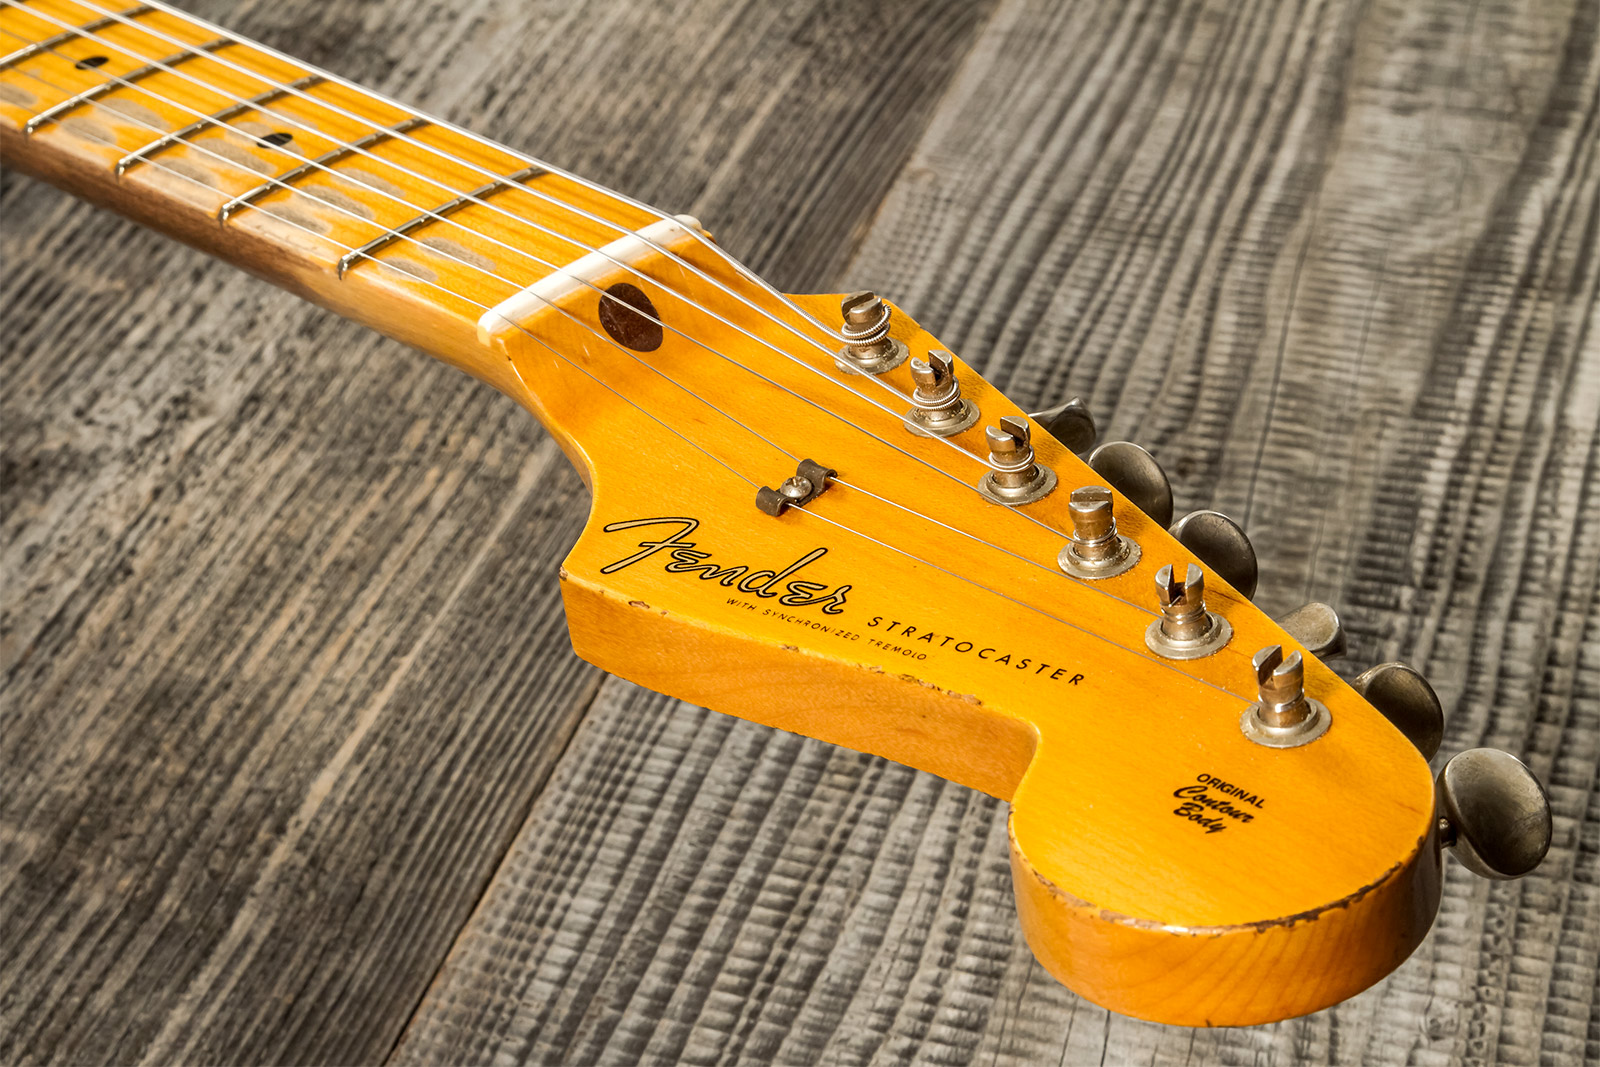 Fender Custom Shop Strat 1957 3s Trem Mn #cz571791 - Relic Wide Fade 2-color Sunburst - Elektrische gitaar in Str-vorm - Variation 8